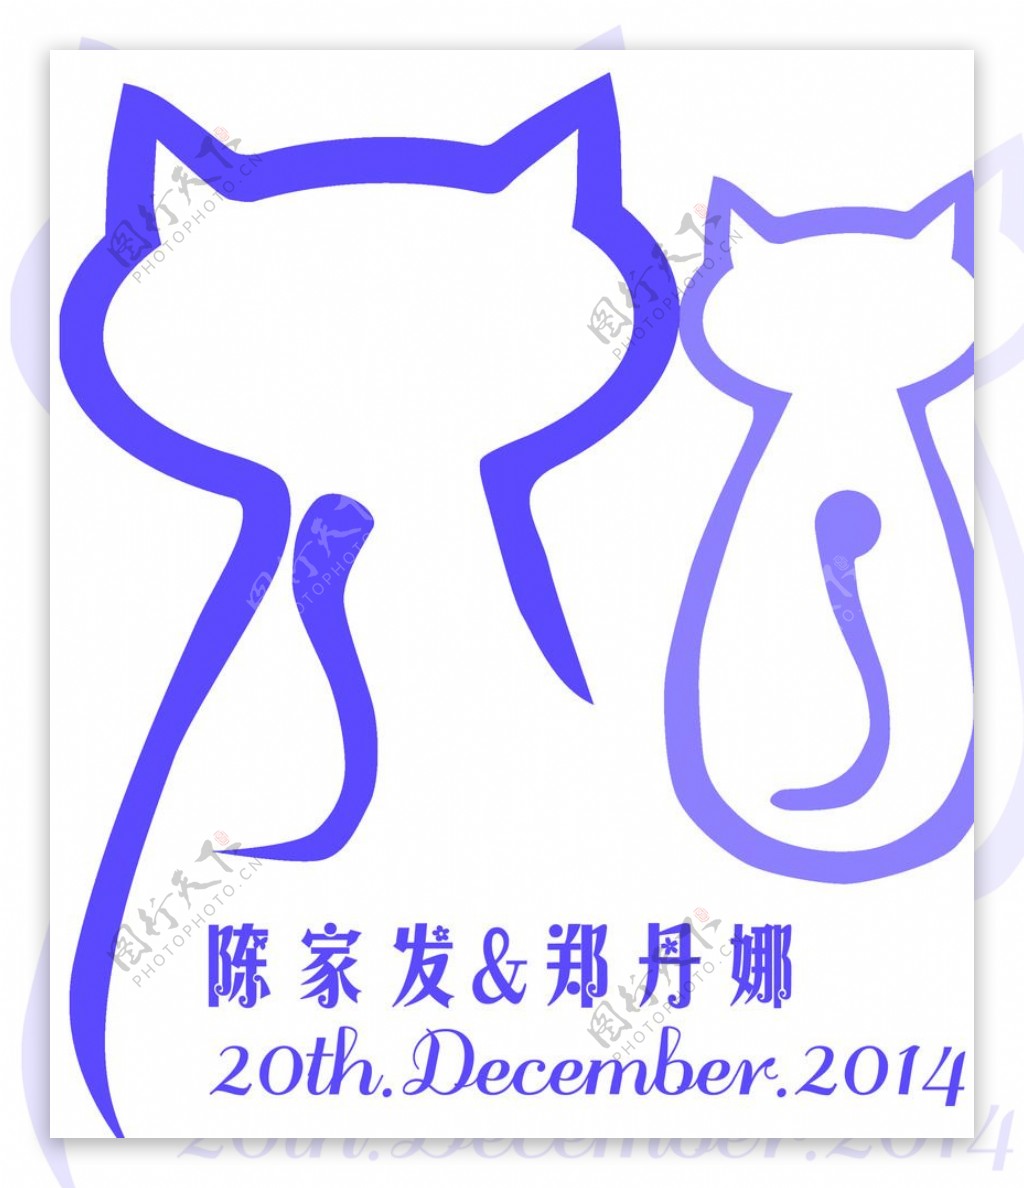 婚礼猫咪logo图片